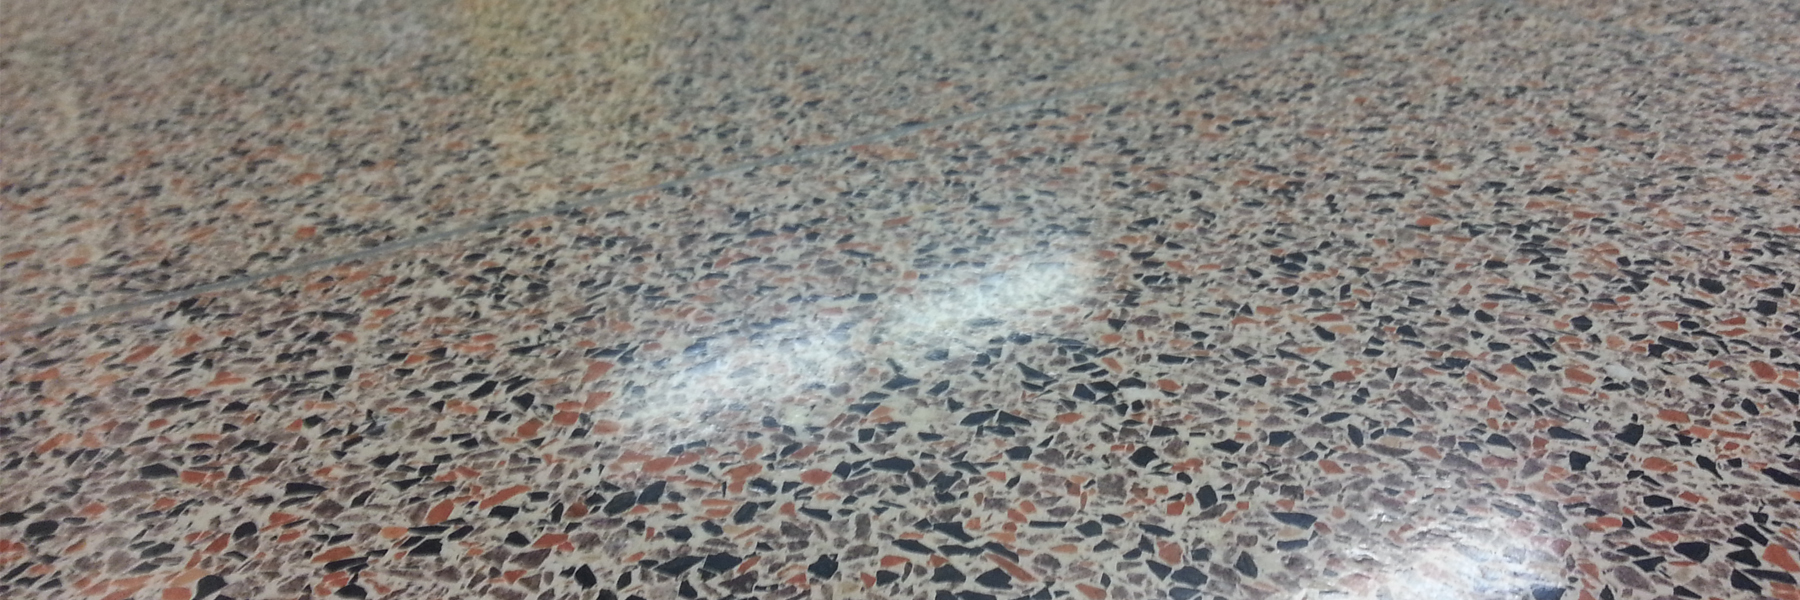 Terrazzo floor at Cedar Rapids school